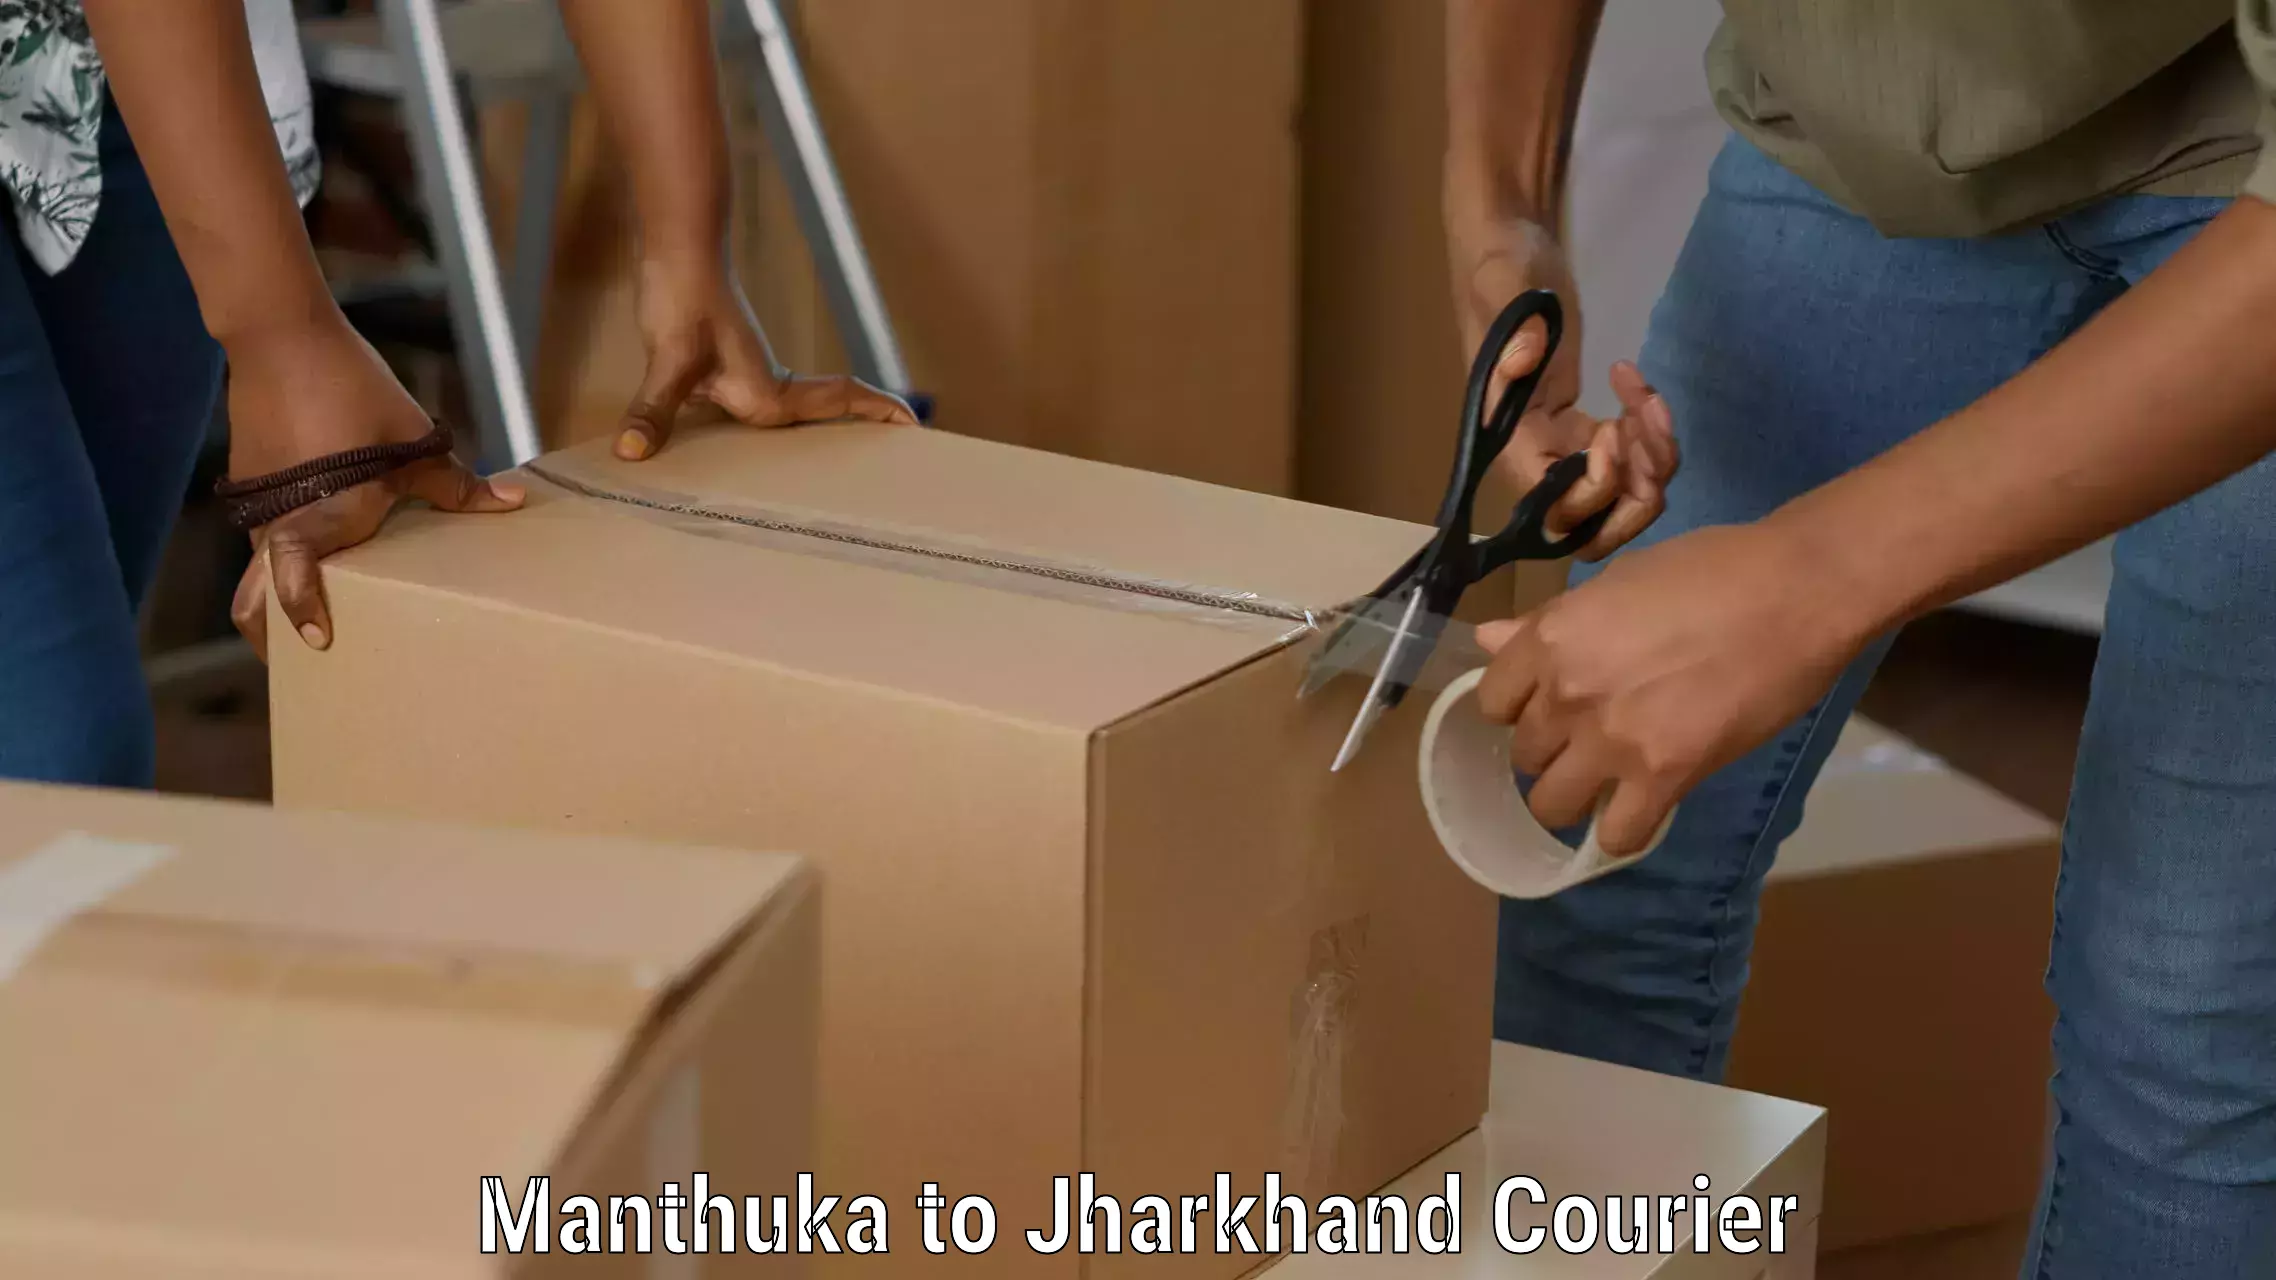 Advanced shipping technology Manthuka to Ramgarh